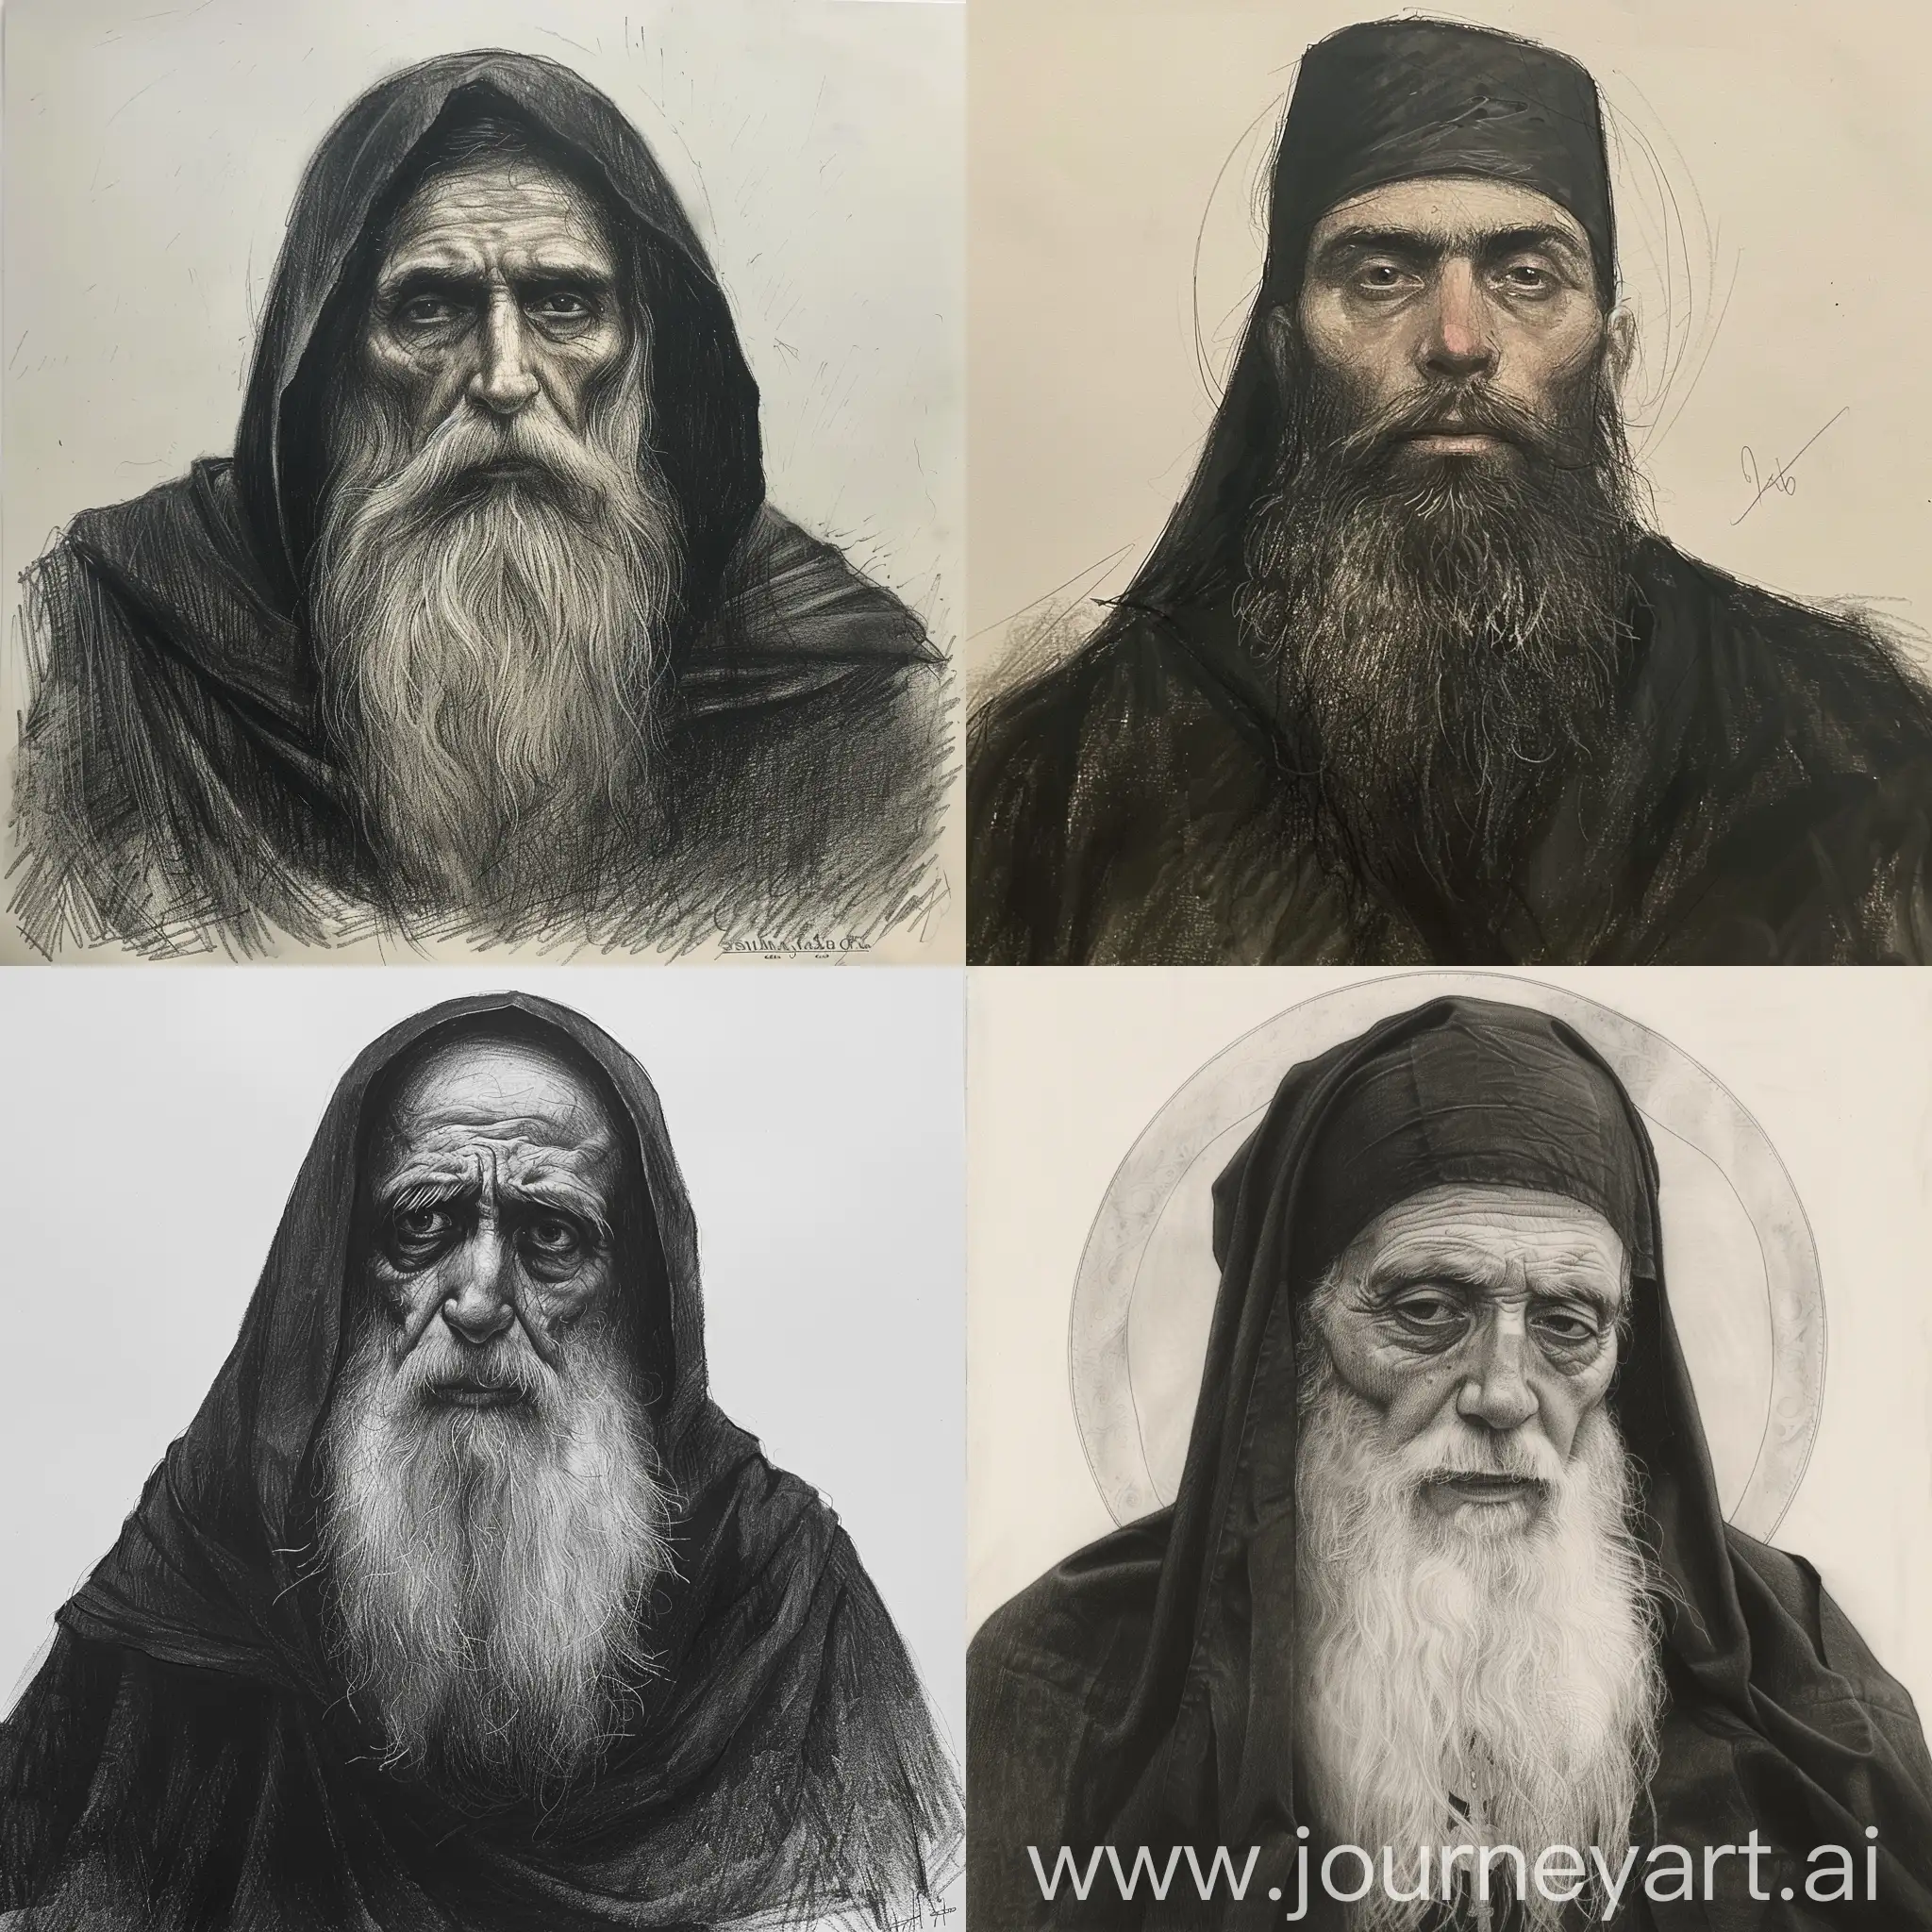 Draw me Sulkhan-Saba Orbeliani was consecrated as a monk in Davit Gareji monastery in Georgia